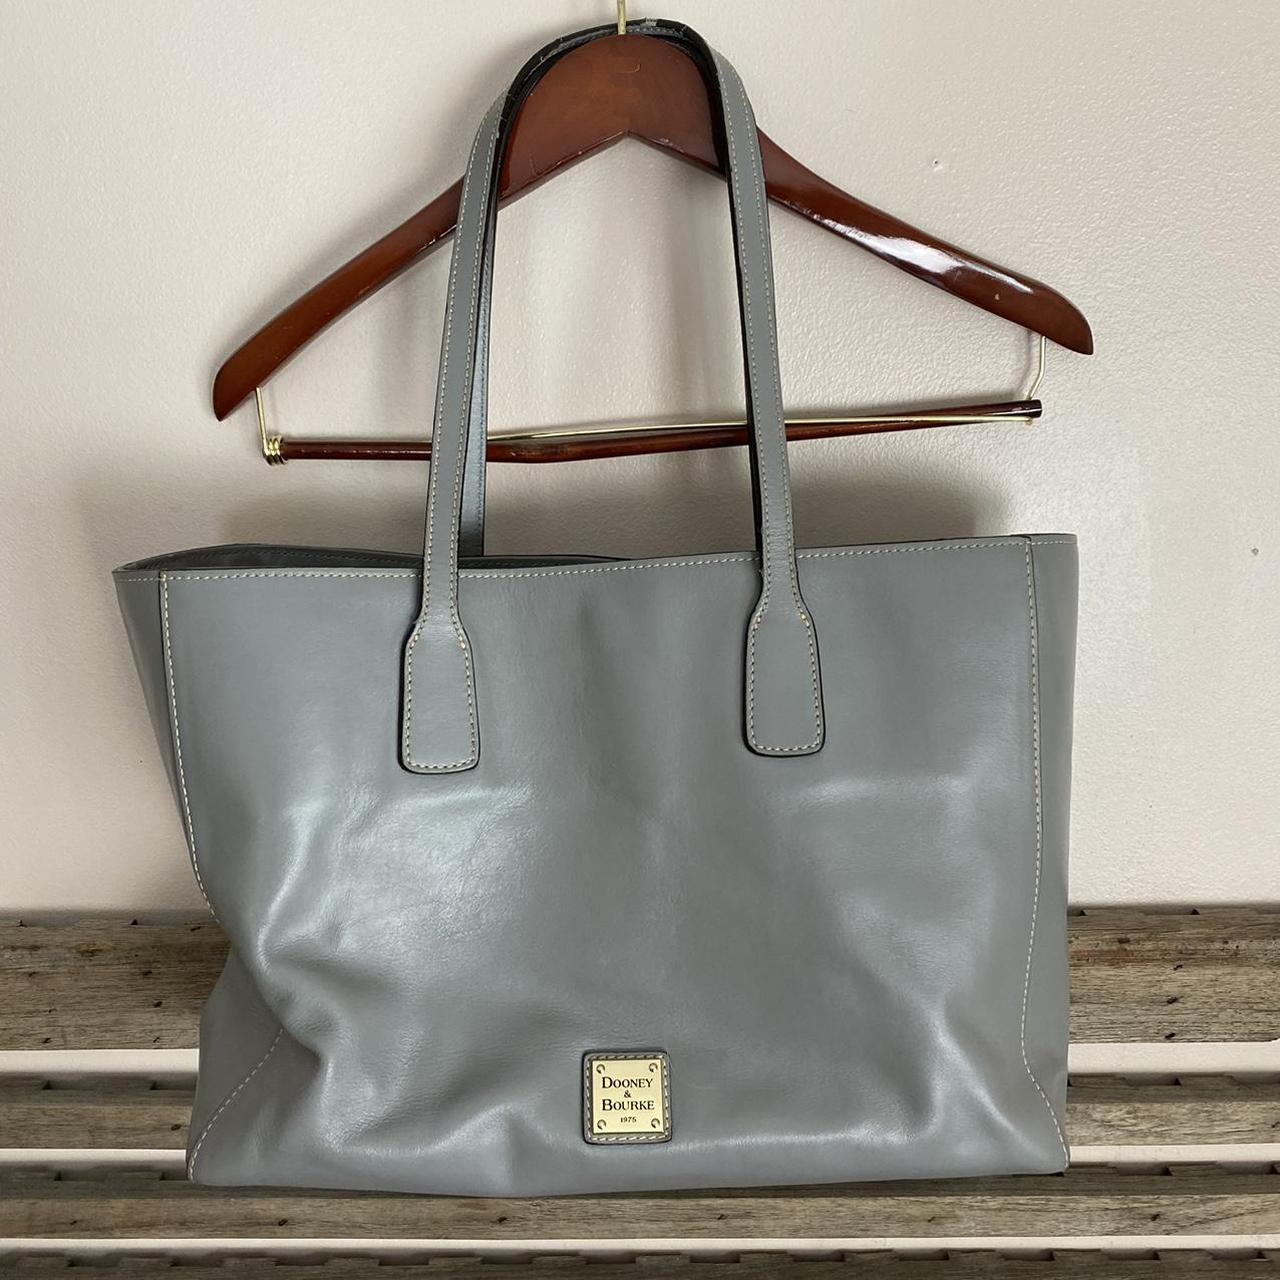 Dooney & Bourke Women's Tote Bags - Grey